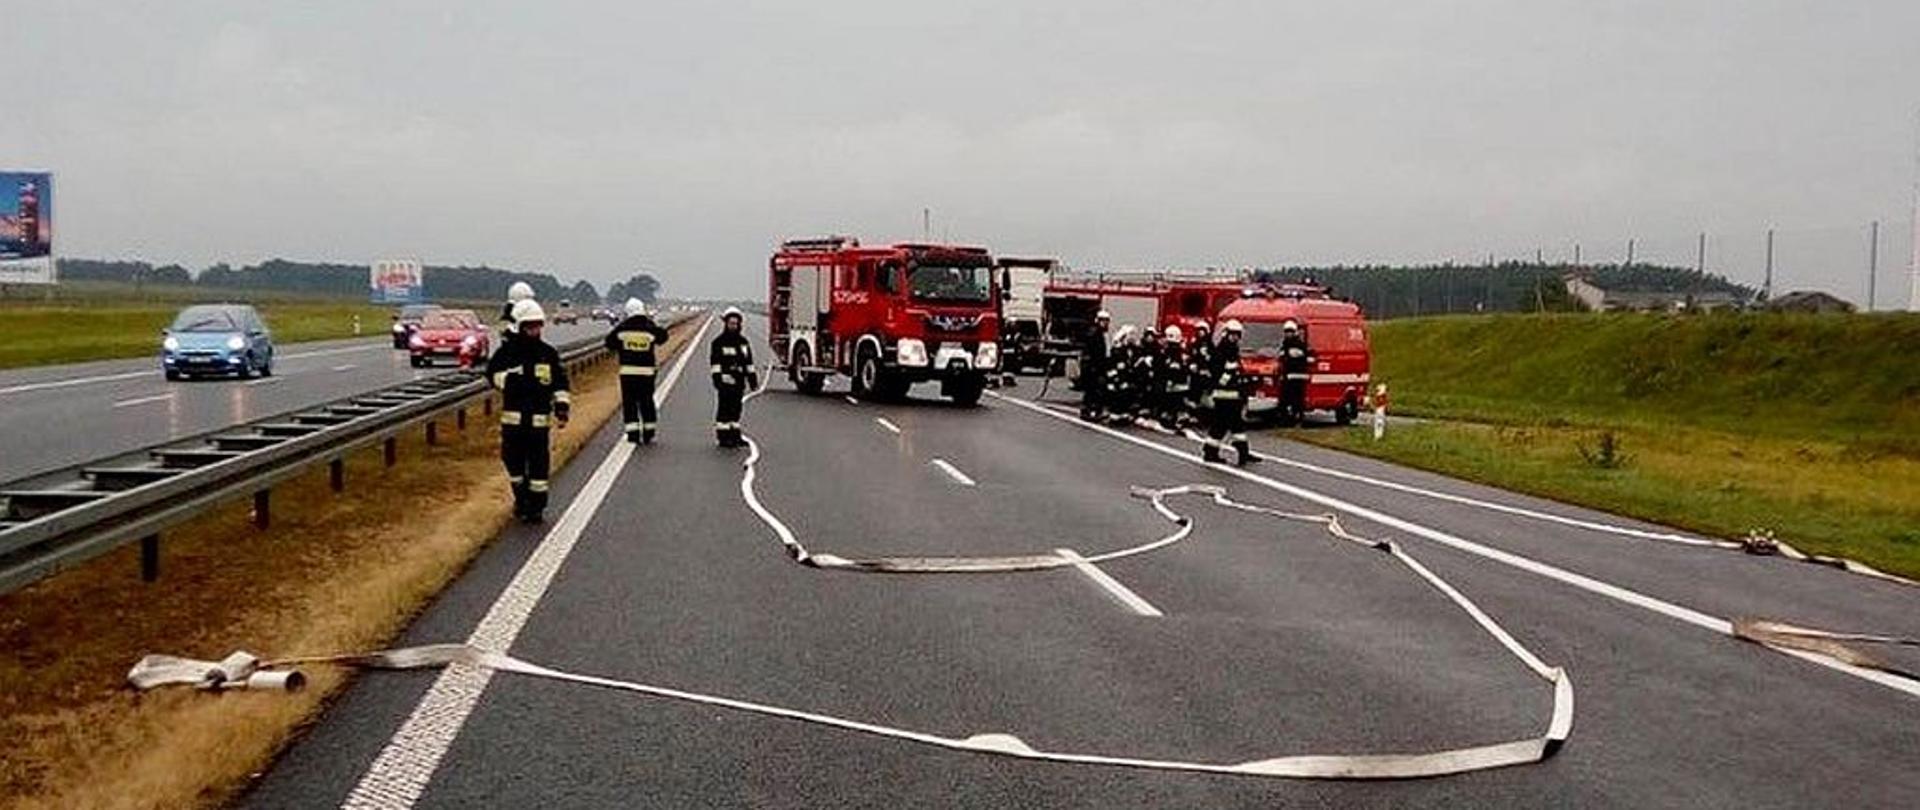 Zdjęcie przedstawia ratowników na autostradzie, w tle widać pojazdy uczestniczące w wypadku, rozwinięte węże, kilka pojazdów straży pożarnej